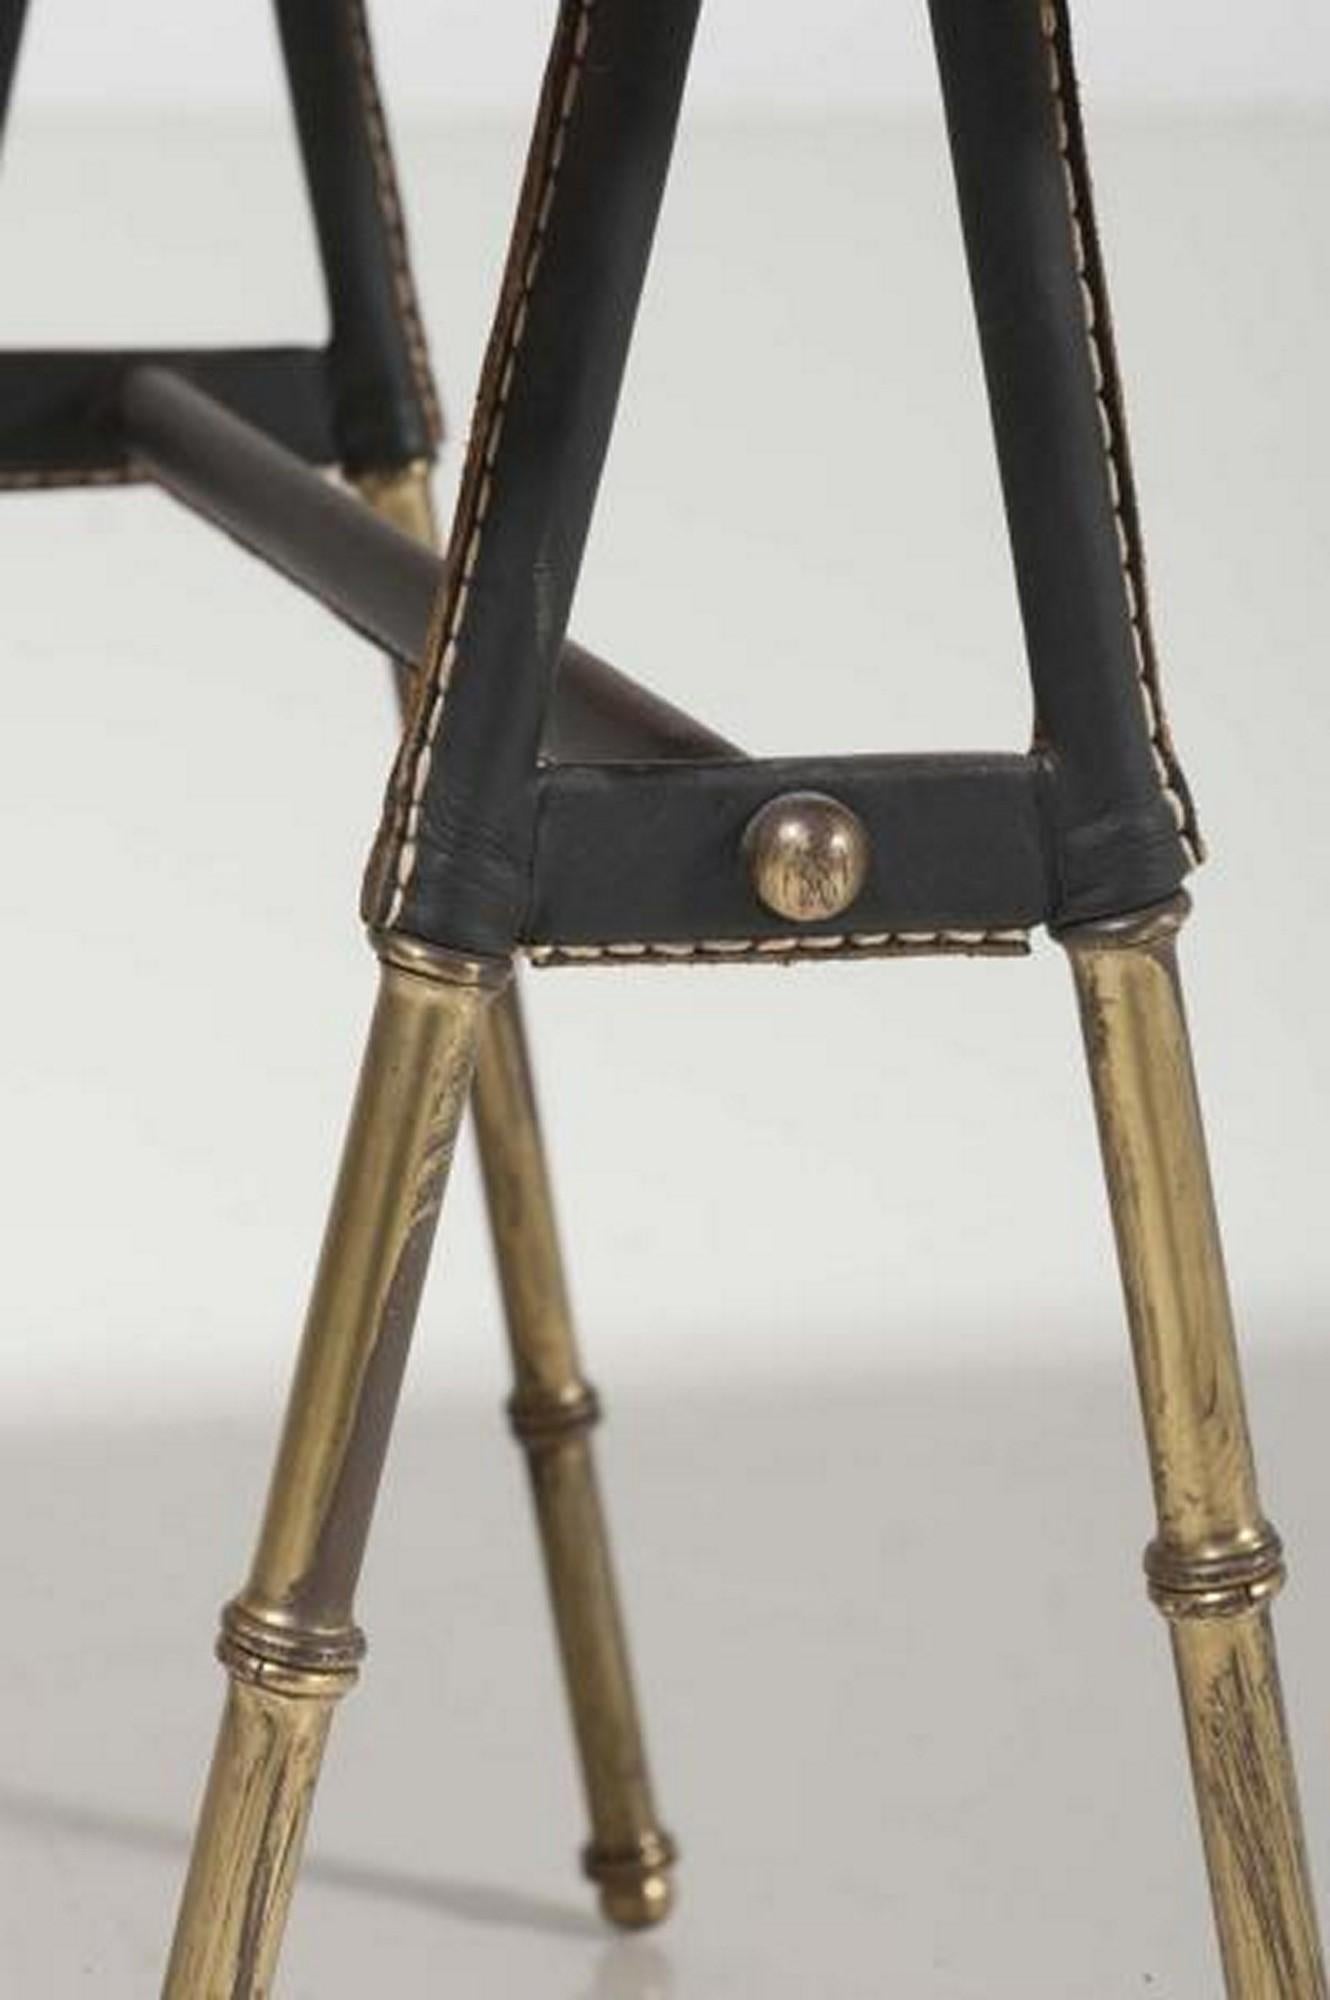 Exceptionnelle et rare table basse du célèbre designer français Jacques Adnet. Cette table utile et pratique est un design classique de haute qualité typique de ses meilleurs travaux. Les pieds sont en laiton dans son célèbre style faux bambou avec